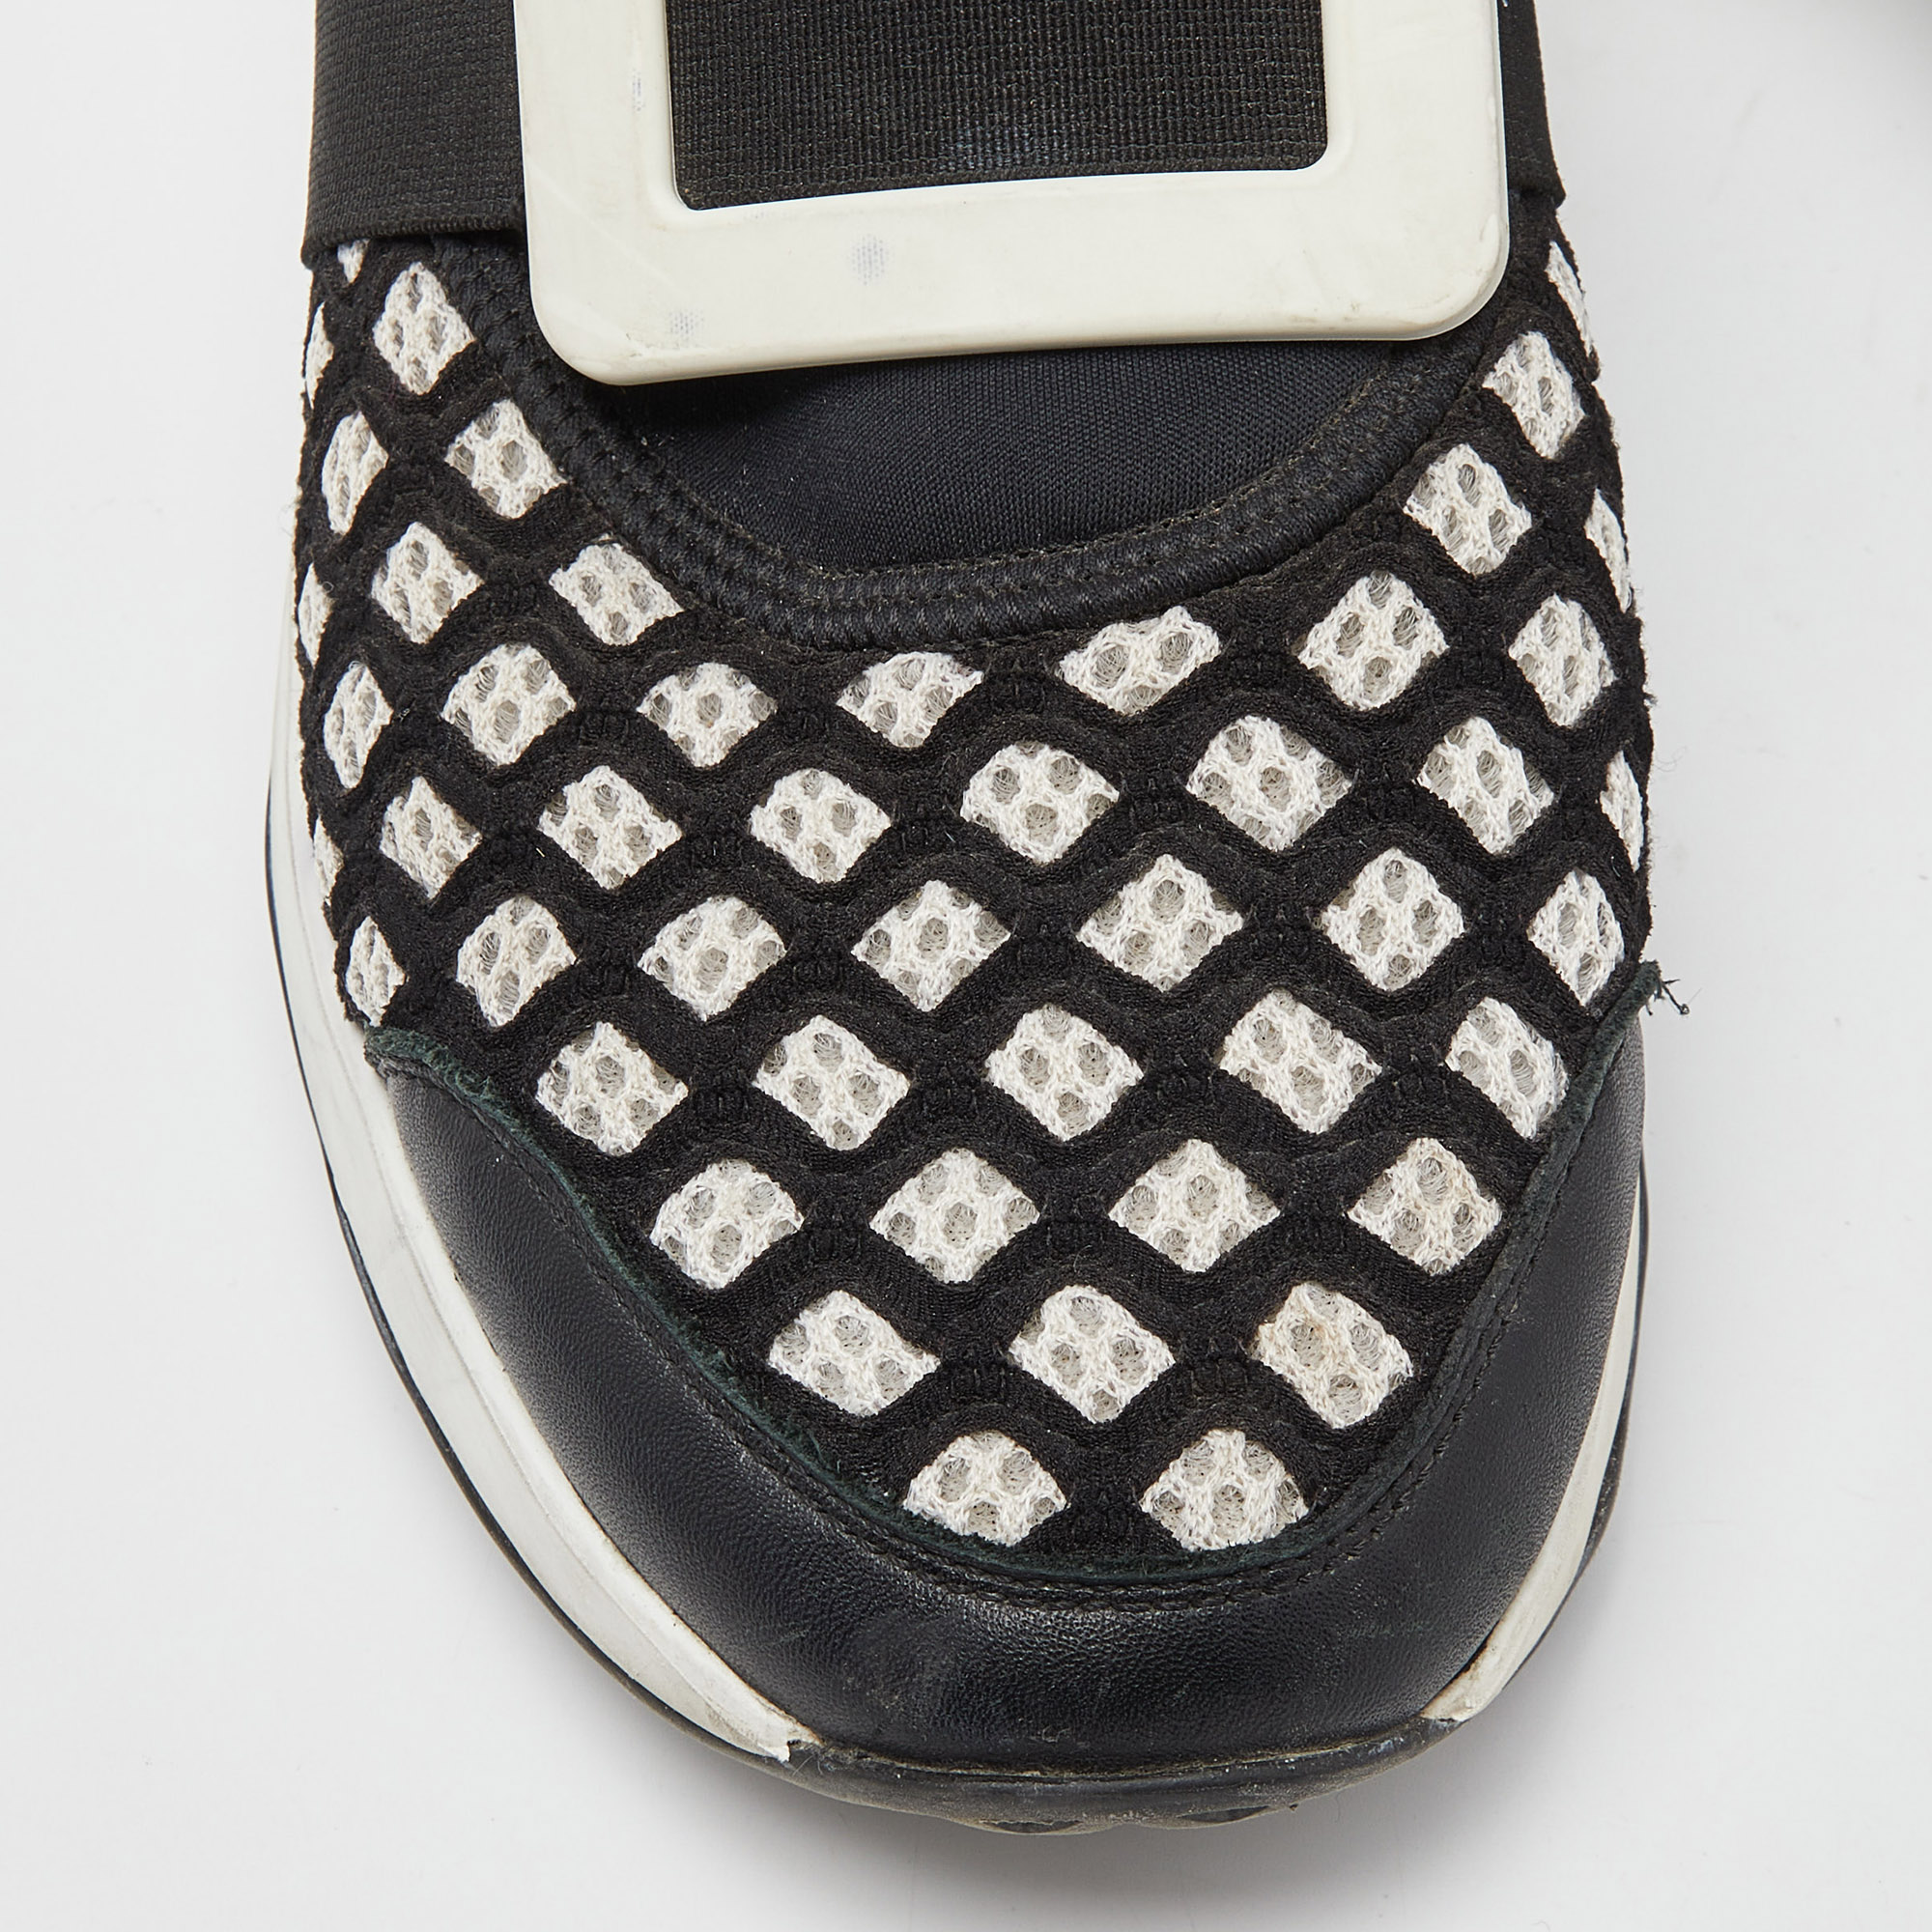 Roger Vivier Black/White Mesh And Neoprene Viv Run Sneakers Size 38